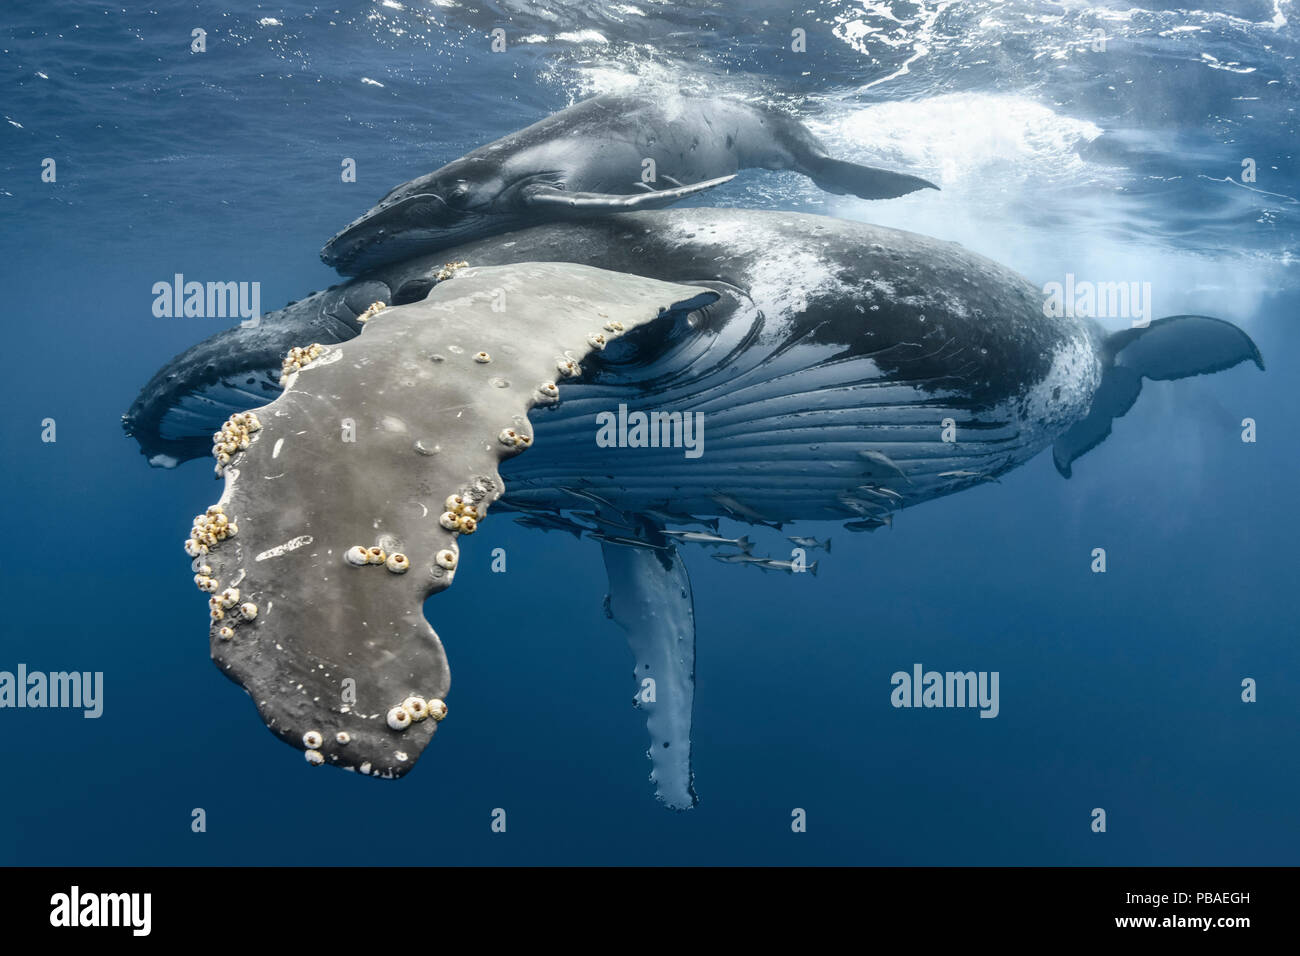 La ballena jorobada (Megaptera novaeangliae) hembra con ternera, perseguidos por los machos durante el celo. Vava'u, el Reino de Tonga. Océano Pacífico. Foto de stock